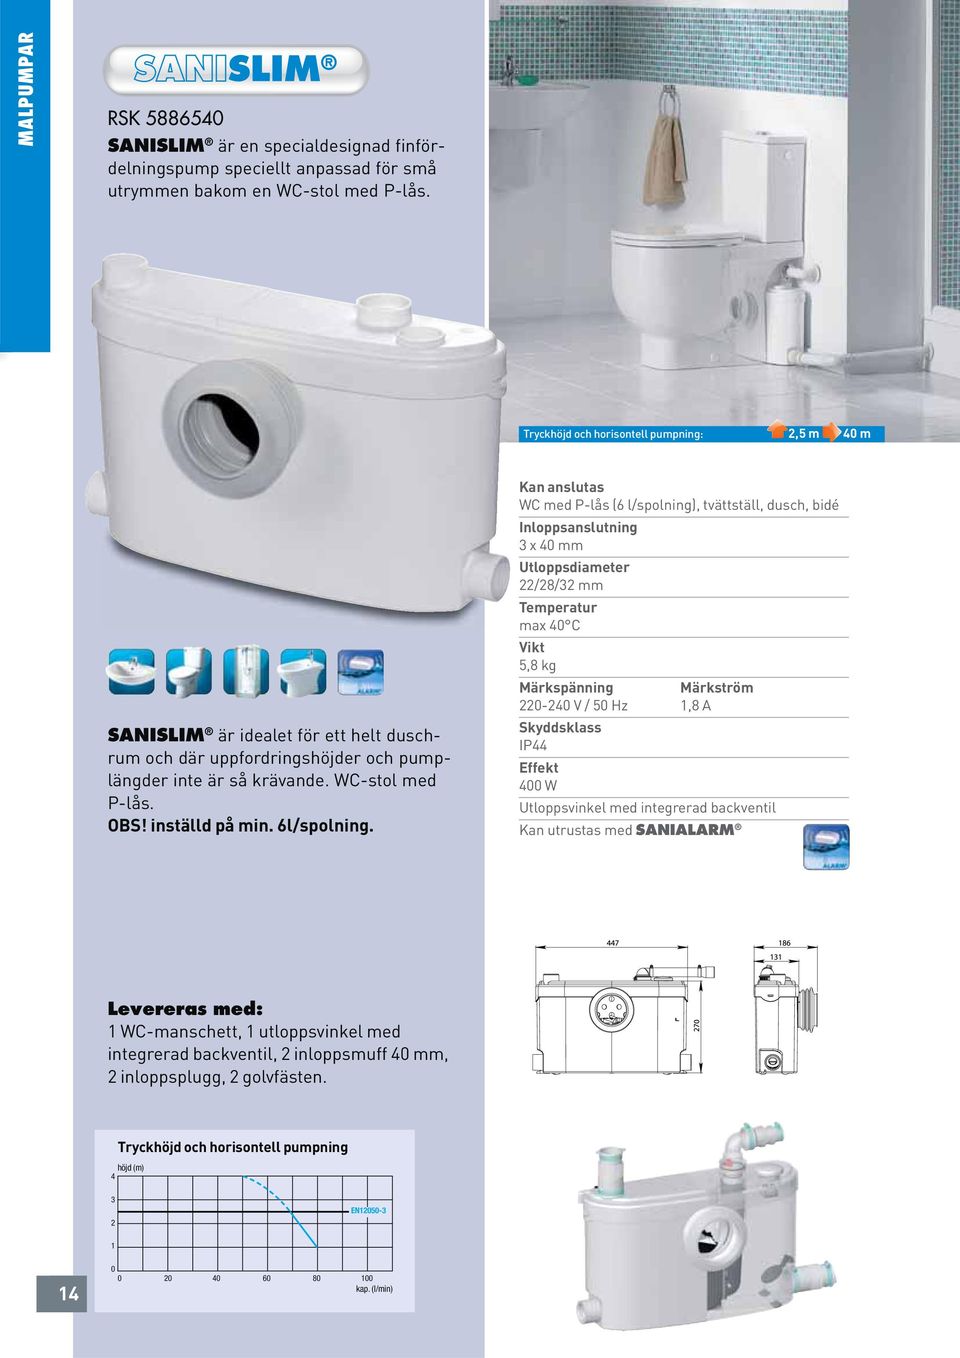 Kan anslutas WC med P-lås (6 l/spolning), tvättställ, dusch, bidé Inloppsanslutning 3 x 40 mm /8/3 mm max 40 C 5,8 kg Märkspänning Märkström 0-40 V / 50 Hz 1,8 A Skyddsklass IP44